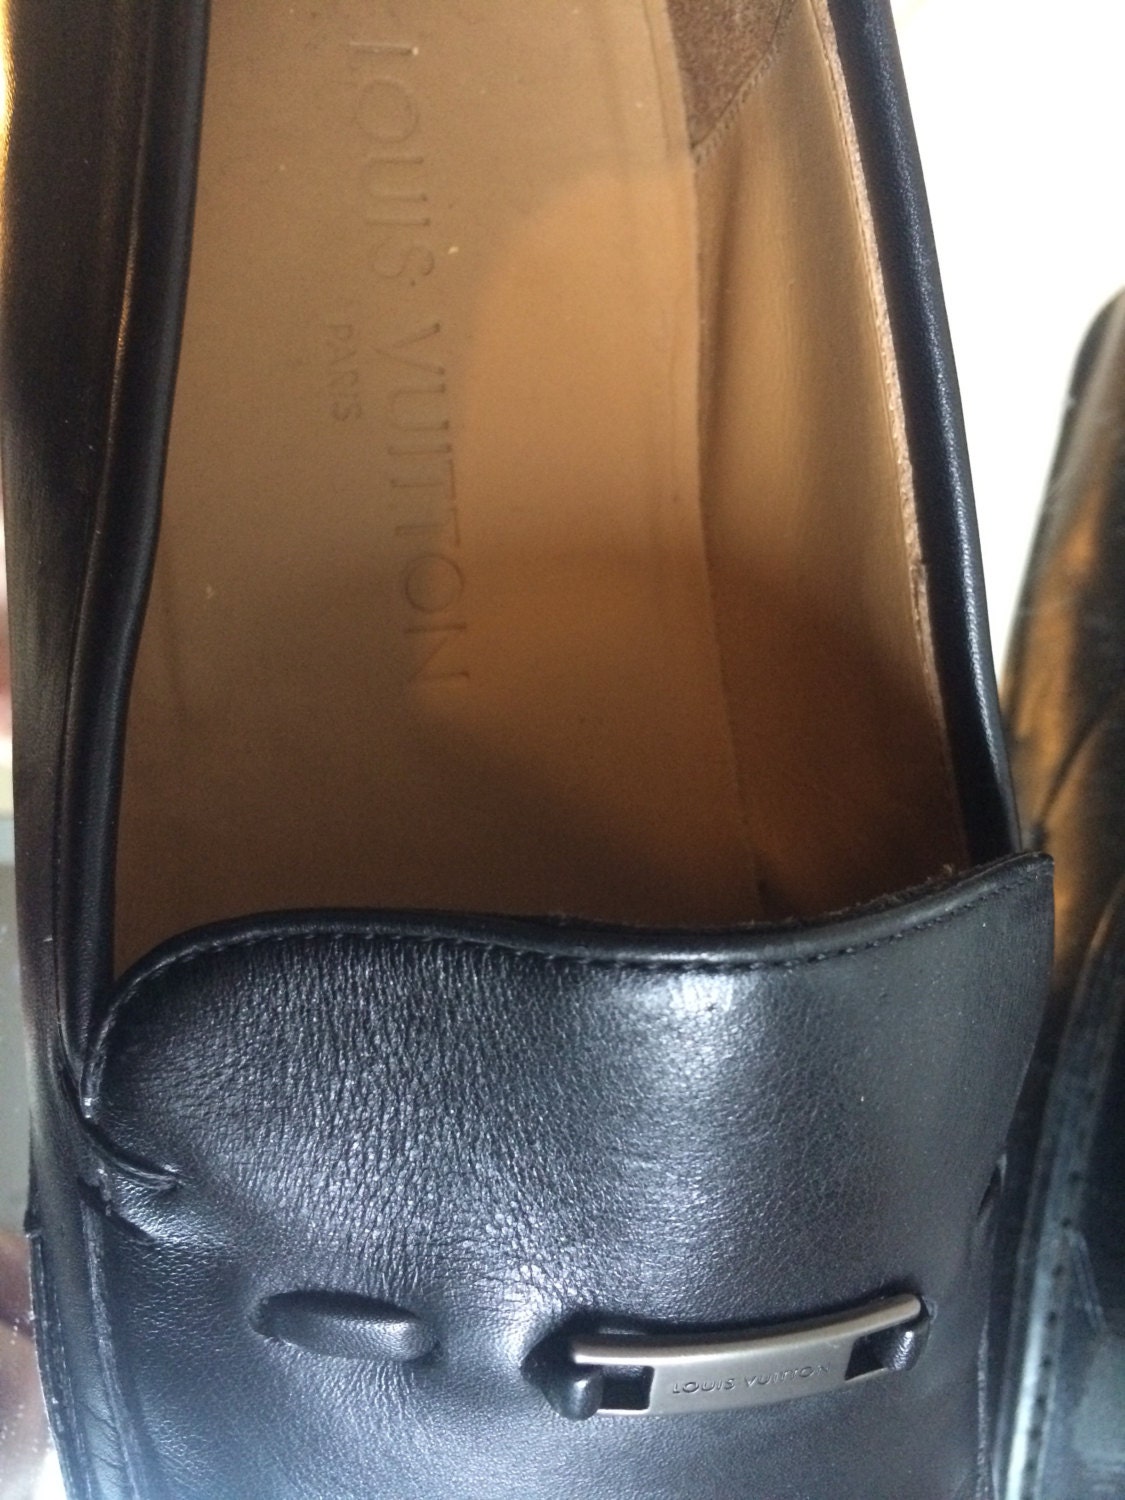 Louis Vuitton Men's Black Leather Shoes Size 8 | Etsy